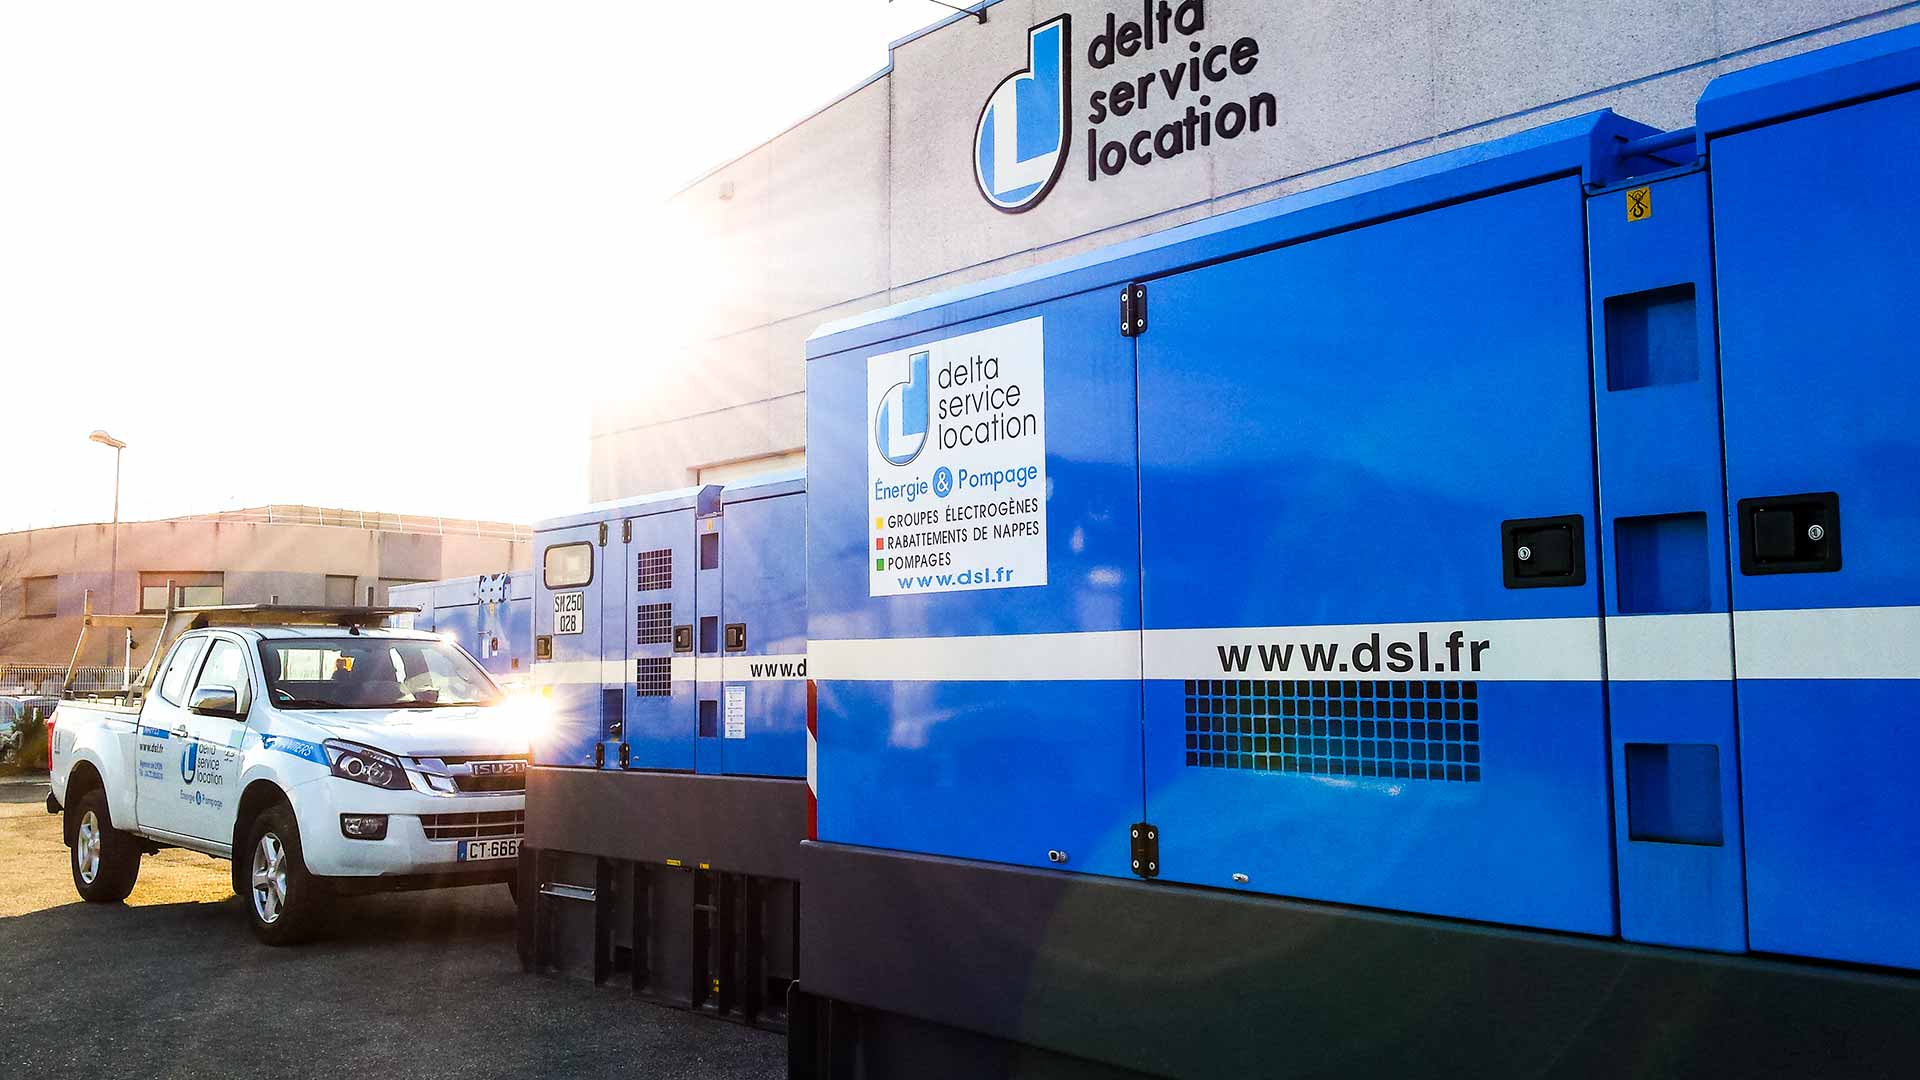 Fondé en 1980 par Michel Denis, Delta Service Location (DSL) est un groupe pionnier de la location de matériel de pompage et de groupes électrogènes à destination du BTP, de l’énergie, de la maintenance industrielle.